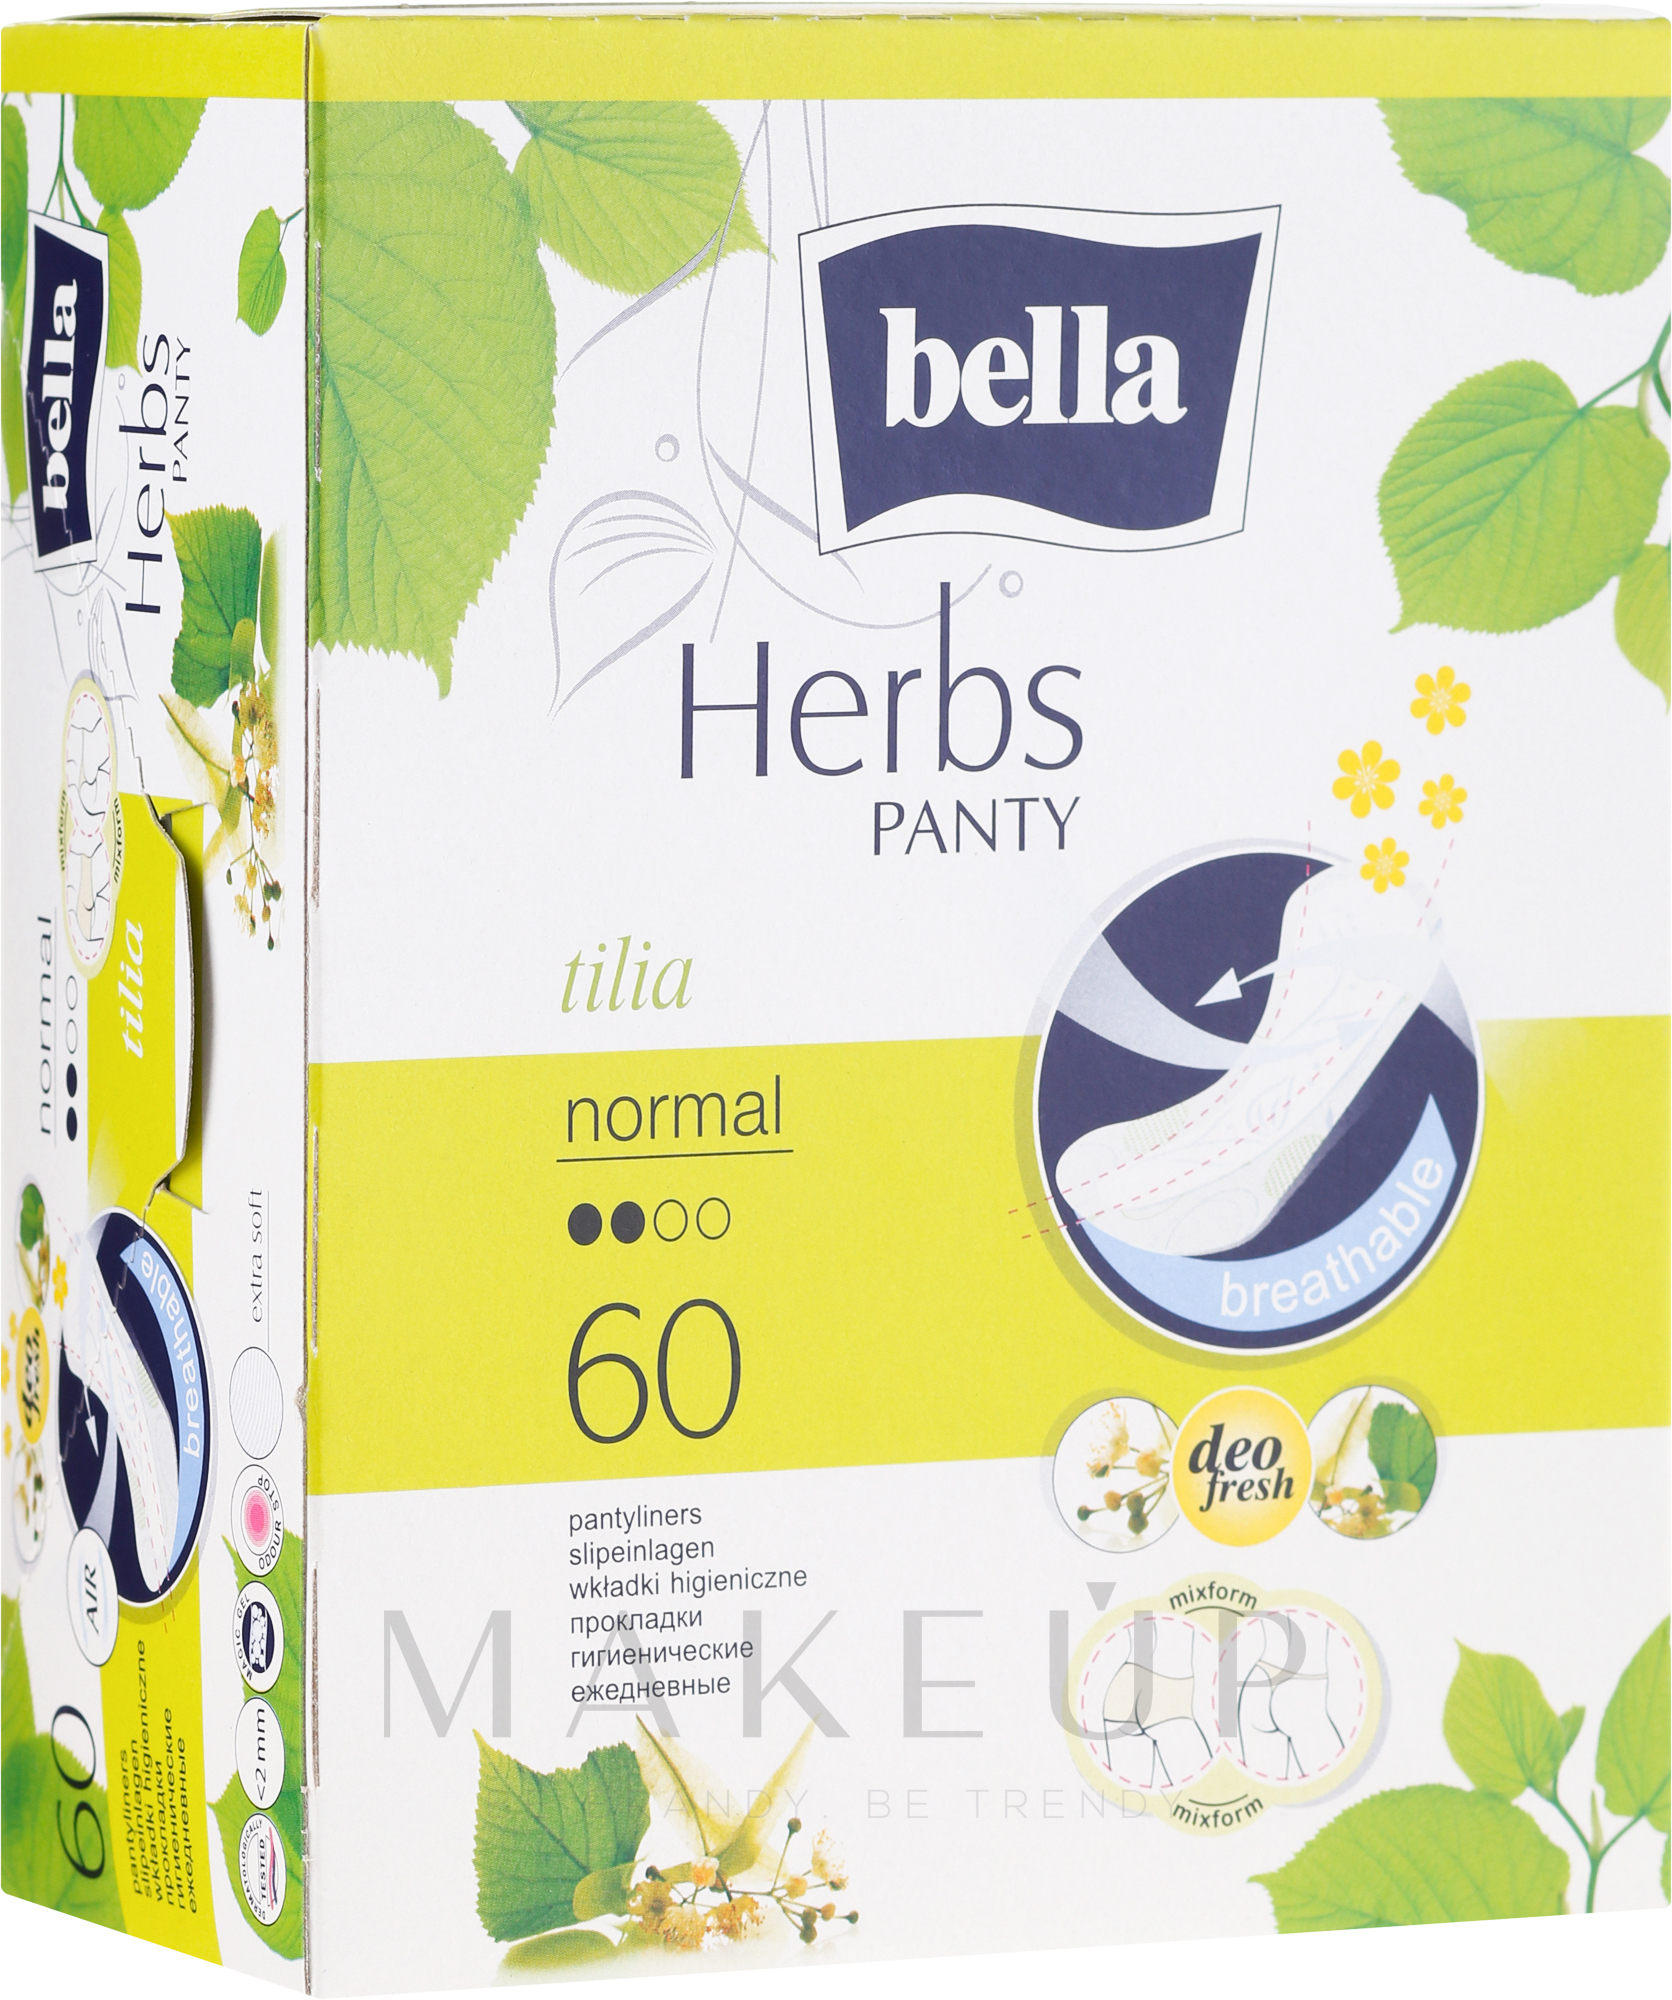 Slipeinlagen Panty Herbs Tilia 60 St. - Bella — Bild 60 St.